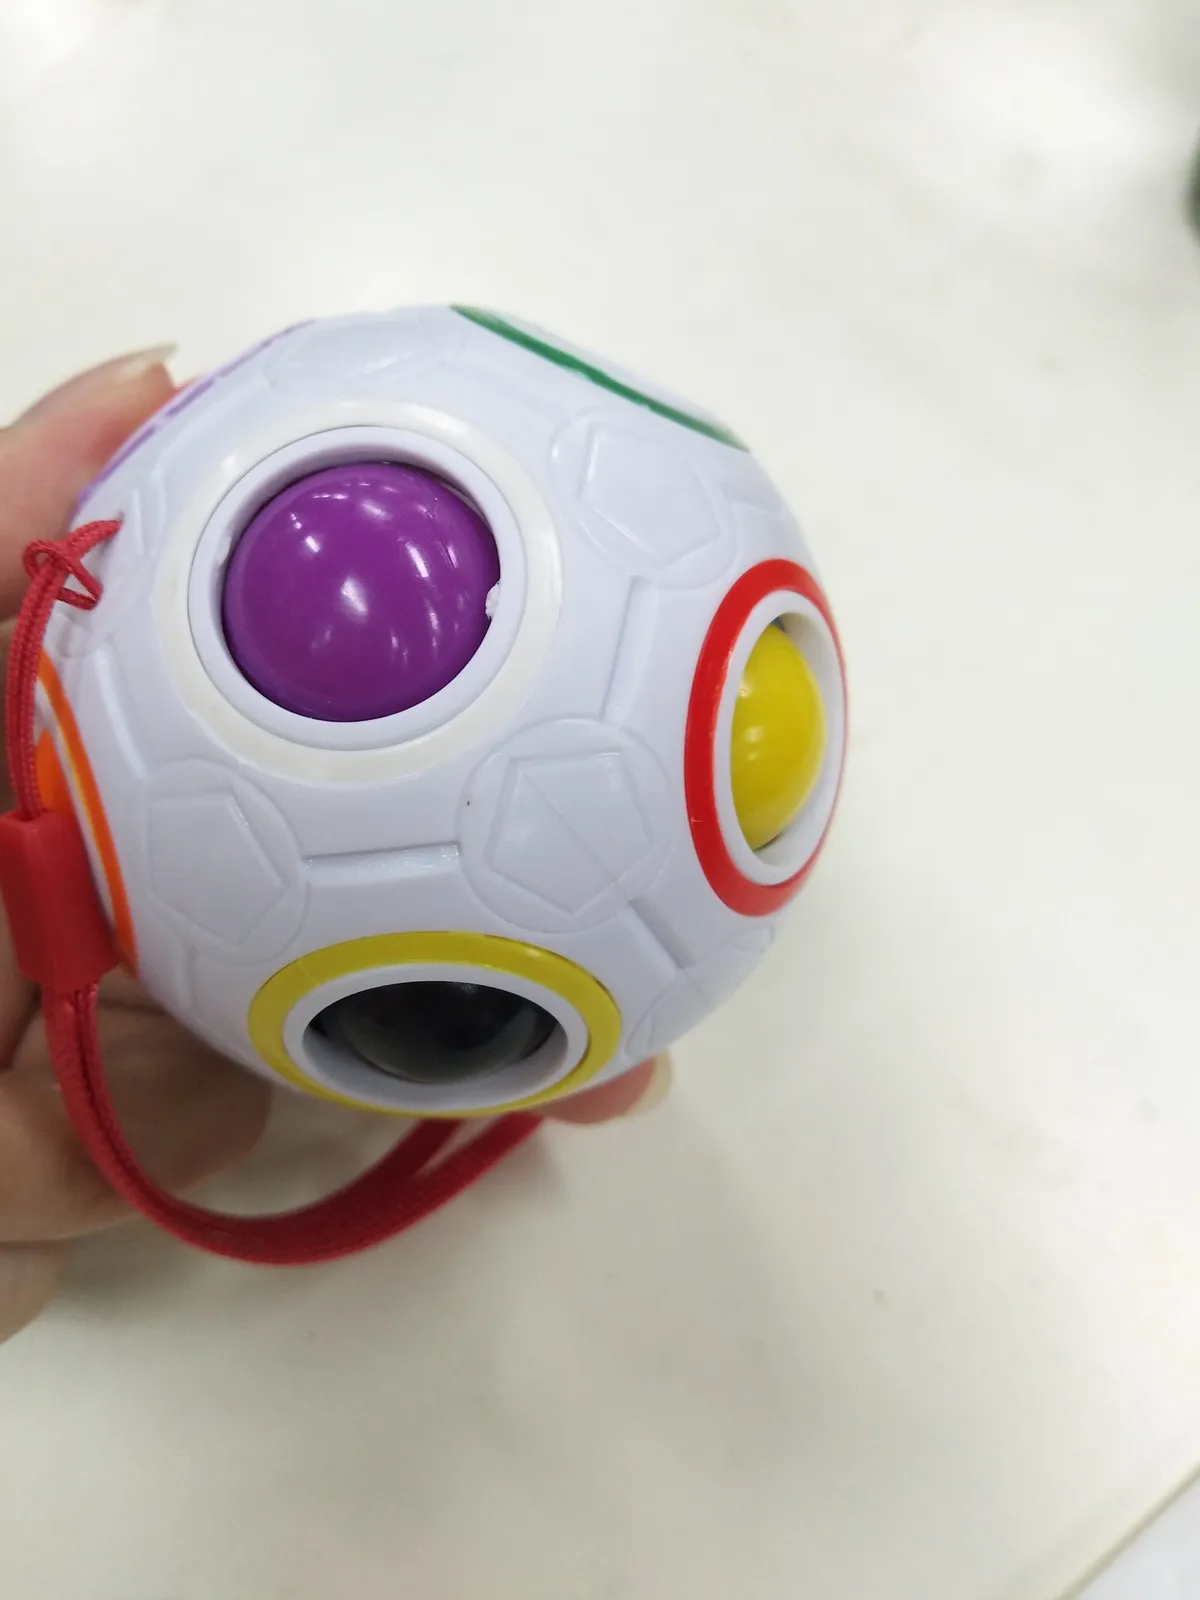 OCDAY футбол магический куб игрушки скорость Радуга Головоломка мяч забавные Творческие дети детские развивающие обучающие игрушки для детей Подарки